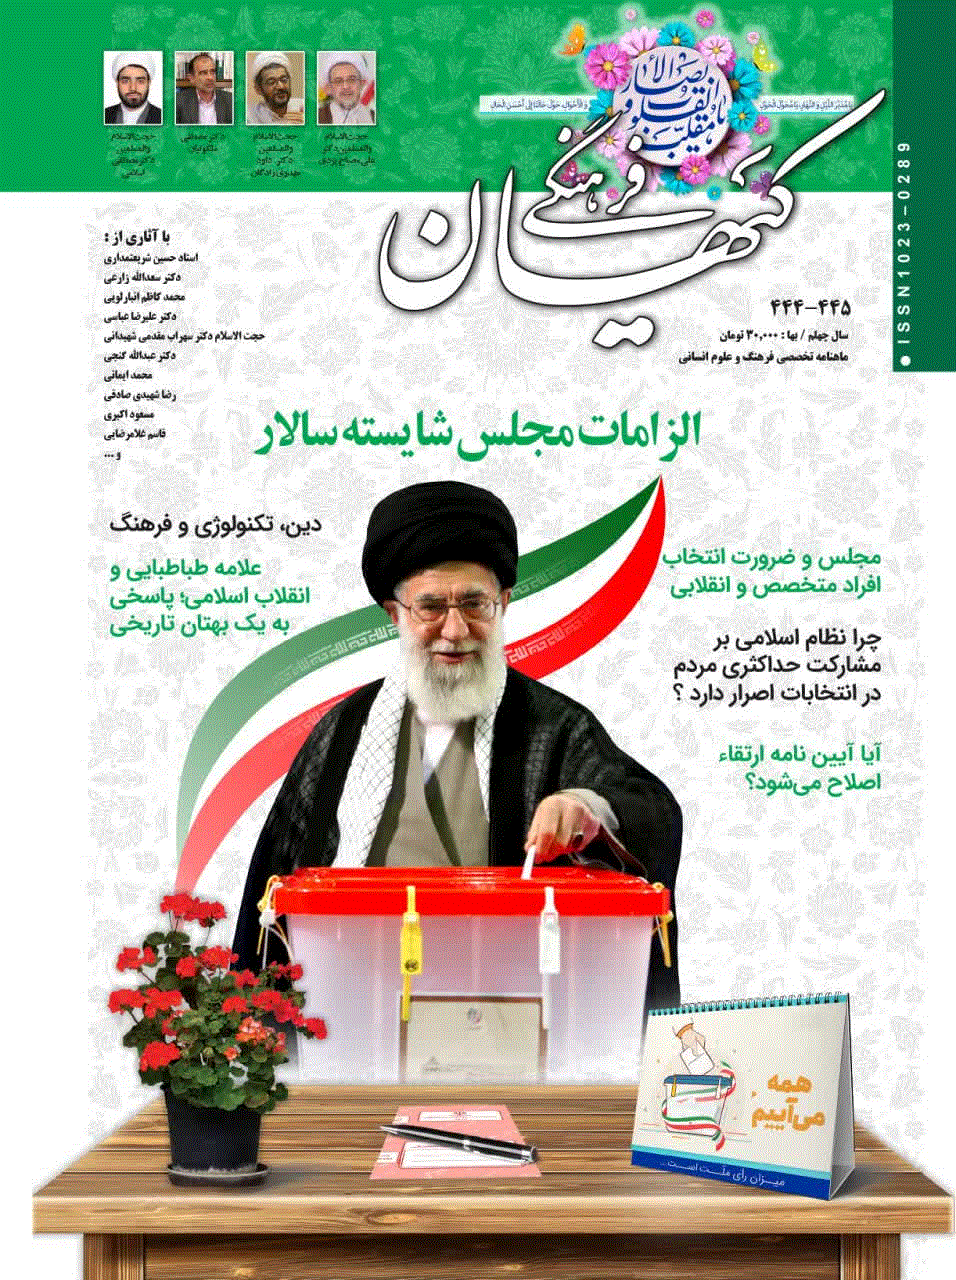 کیهان فرهنگی - آبان 1366 - شماره 44